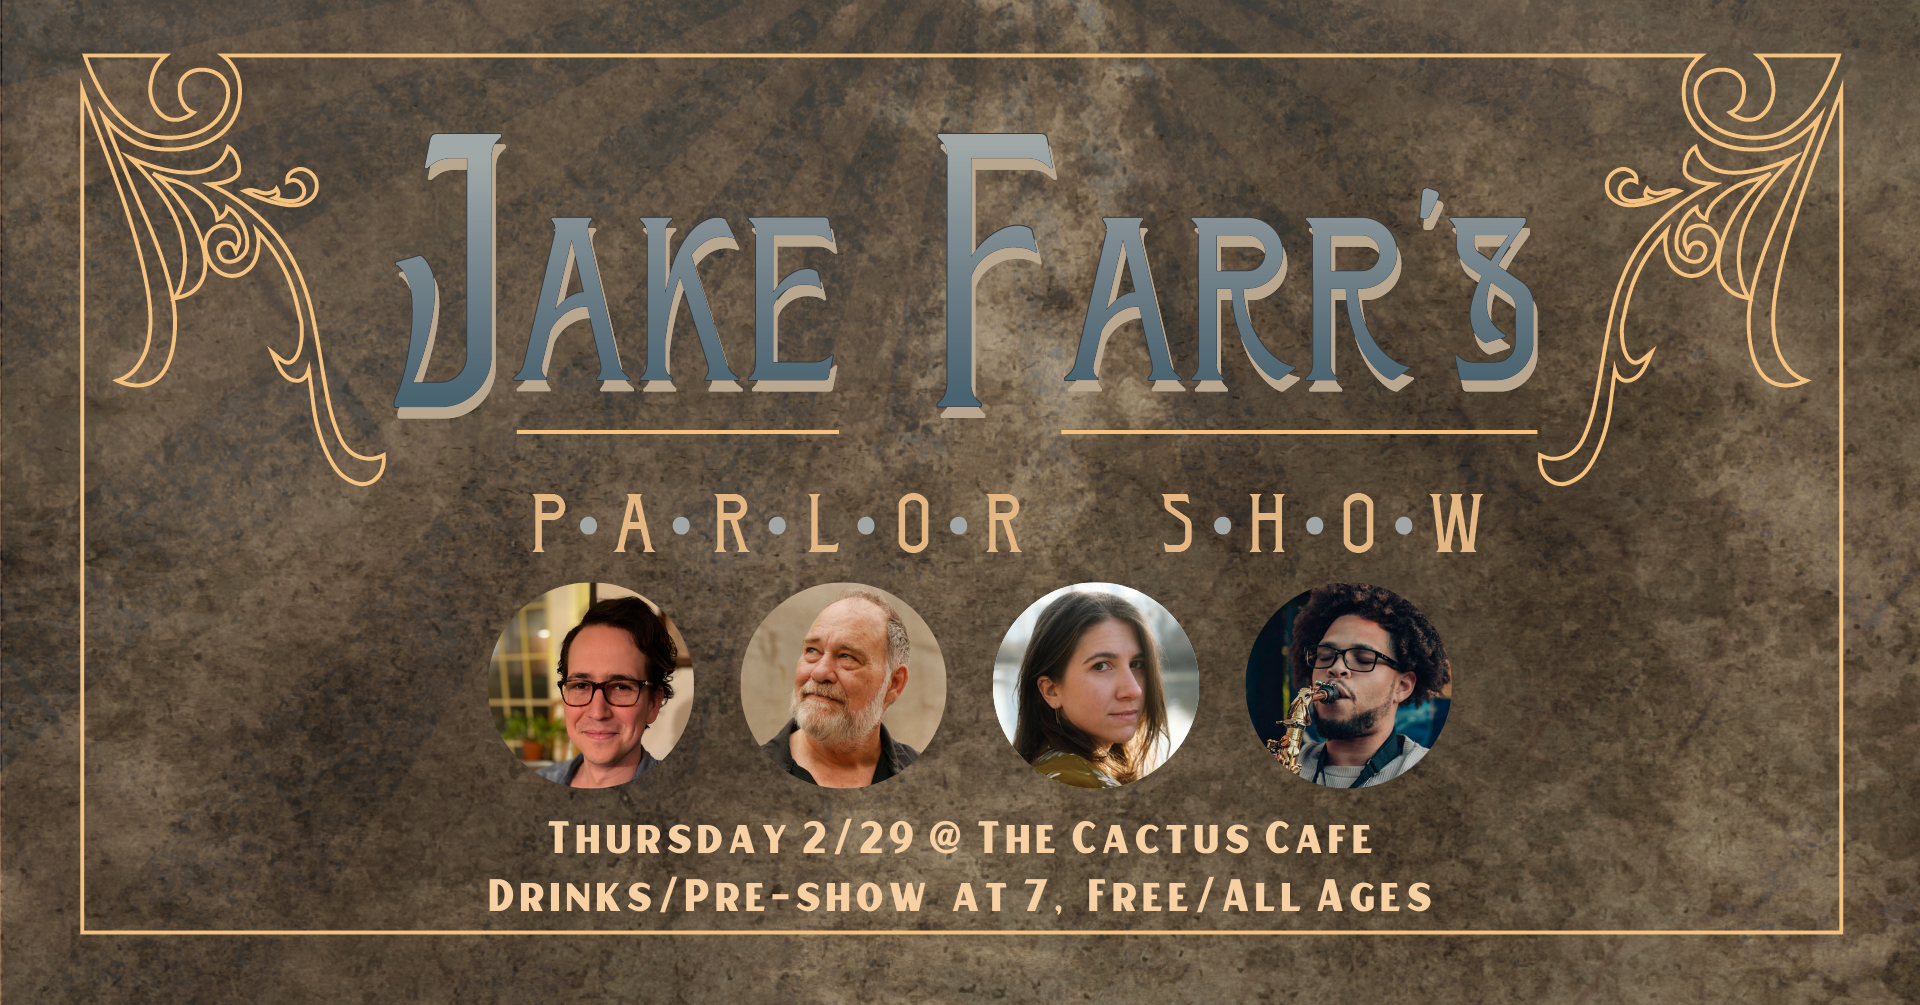 Jake Farr Parlor Show